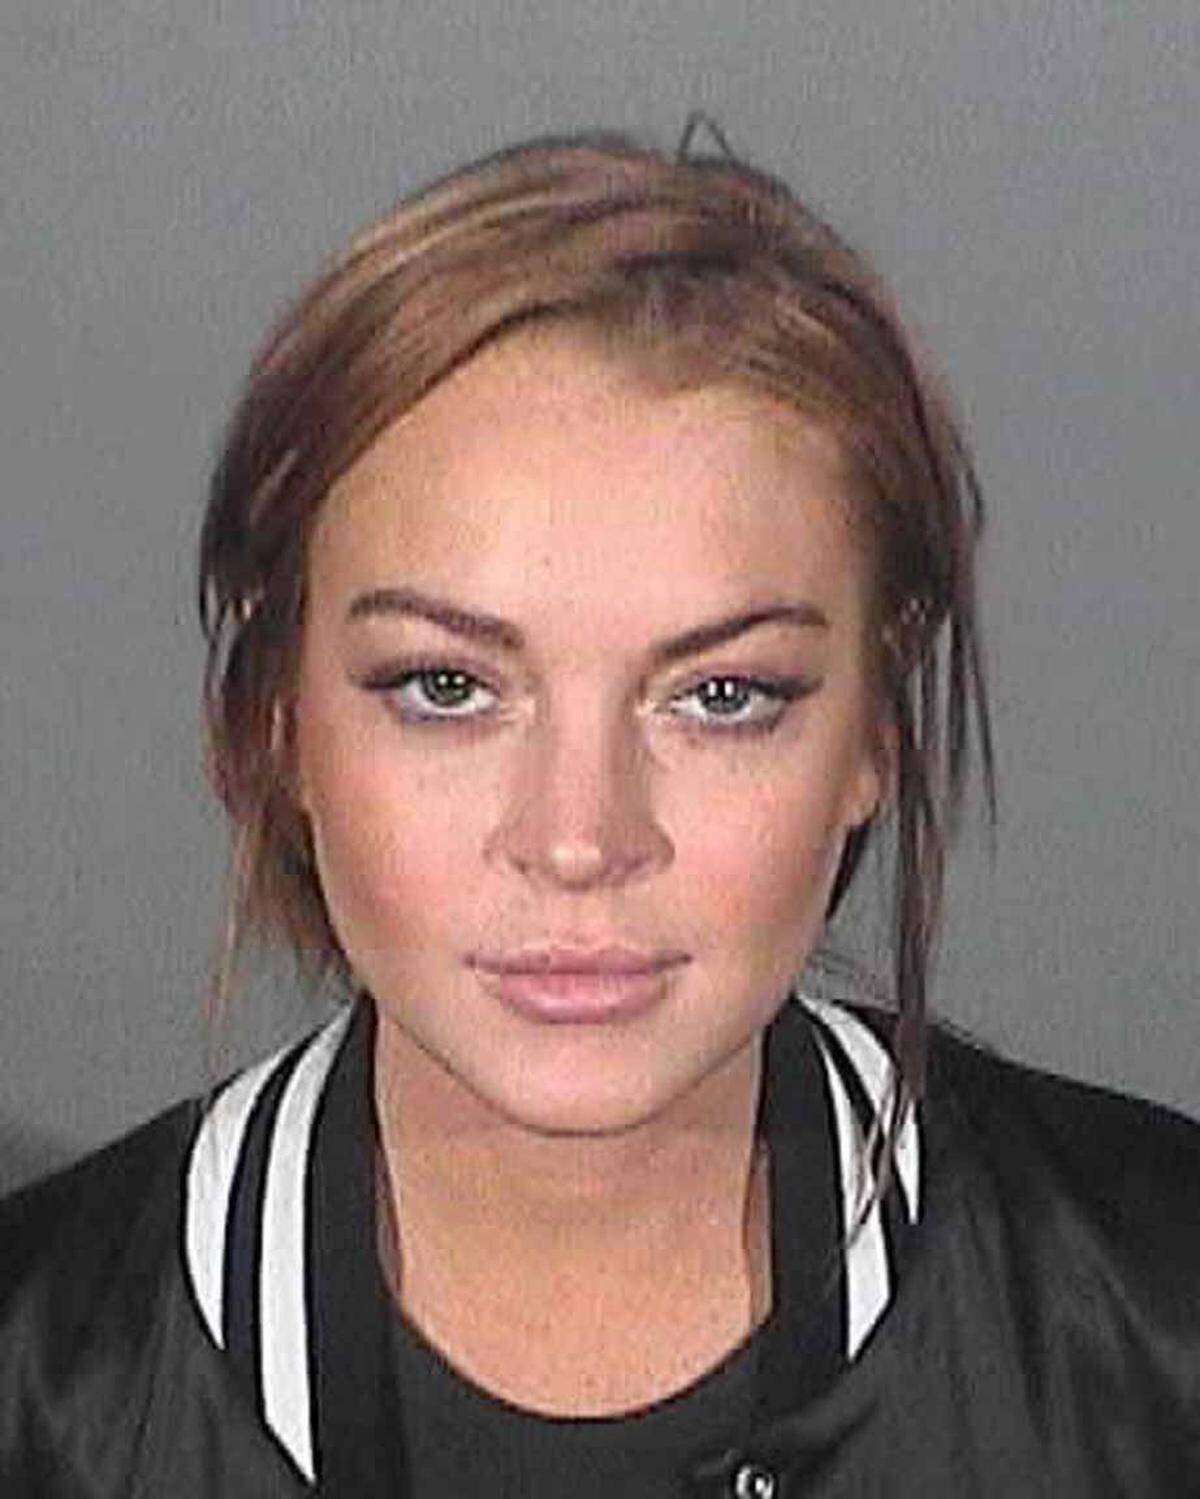 Nach Gerüchten um Drogen, wilden Partys und Gefängnis kündigte Jill Stuart den Vertrag mit Lindsay Lohan 2008. Das Modeunternehmen setzte danach auf Hillary Swank.    